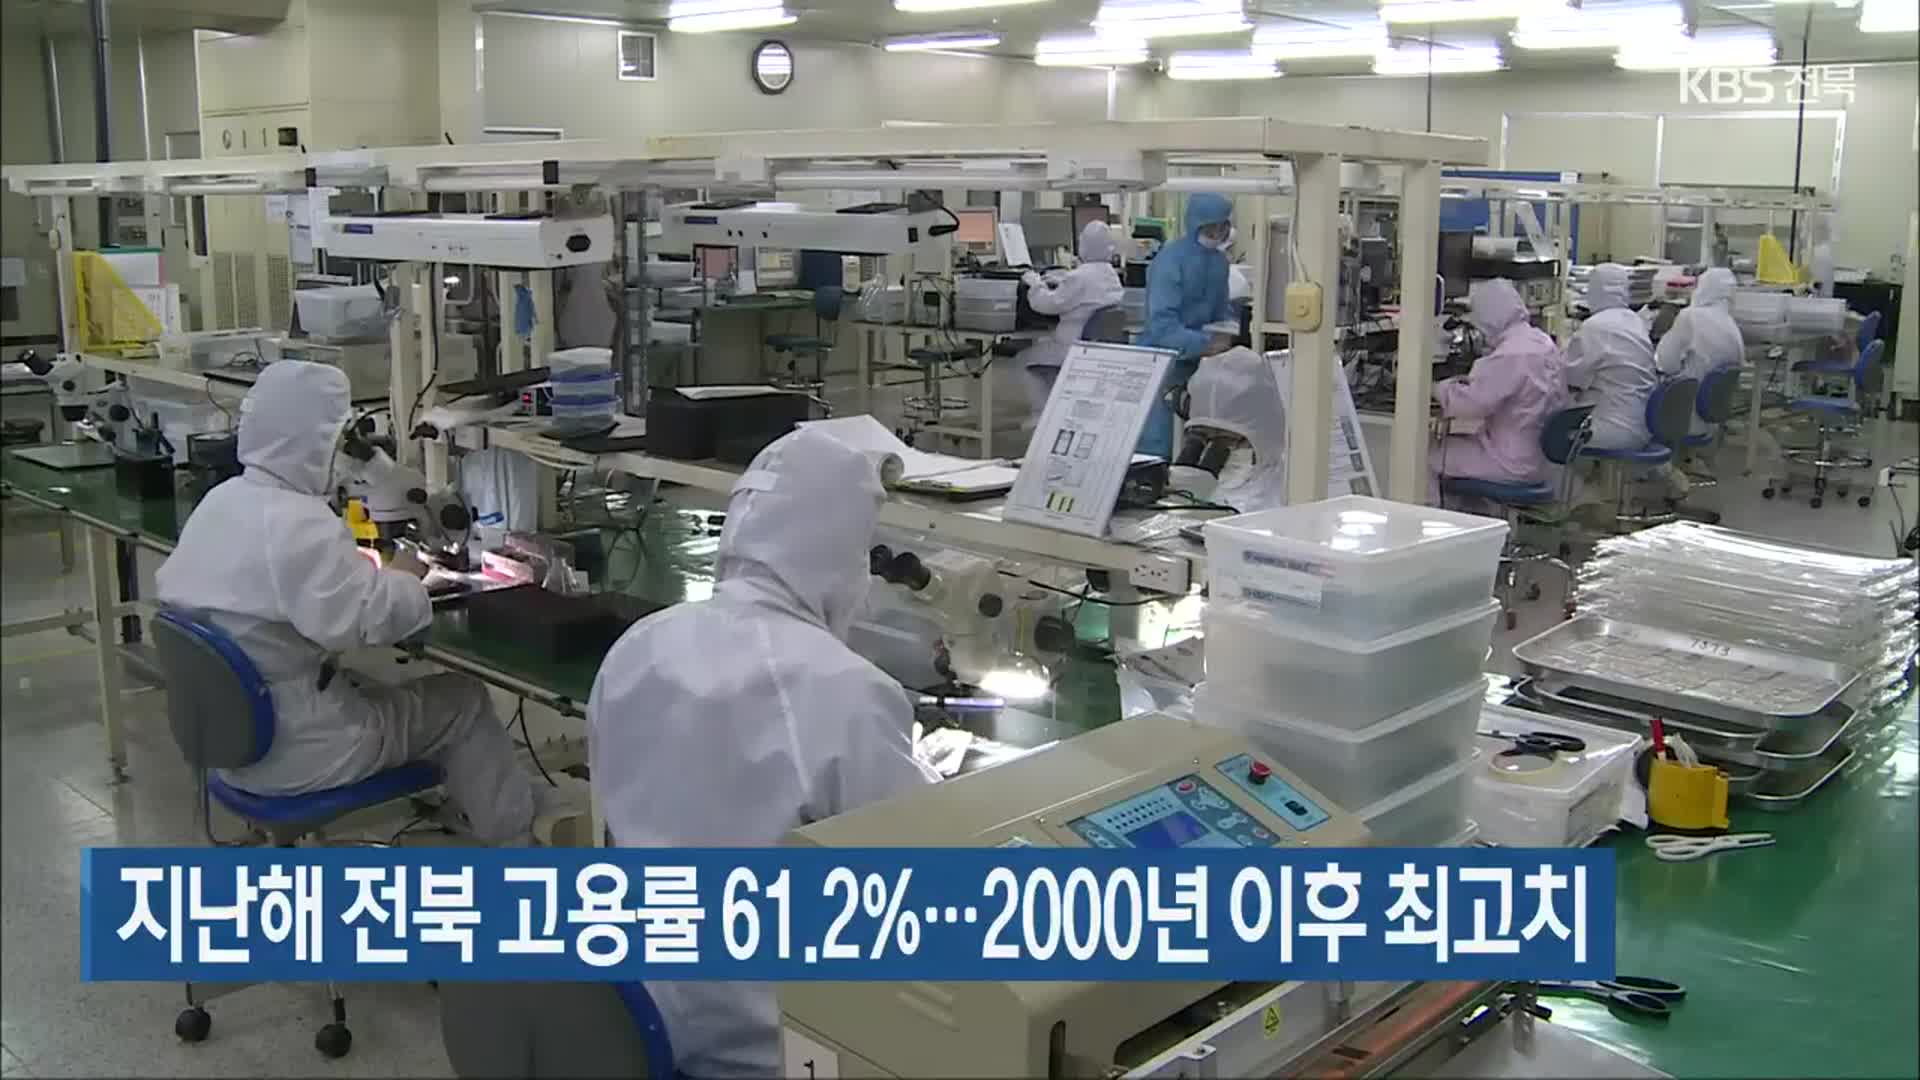 지난해 전북 고용률 61.2%…2000년 이후 최고치